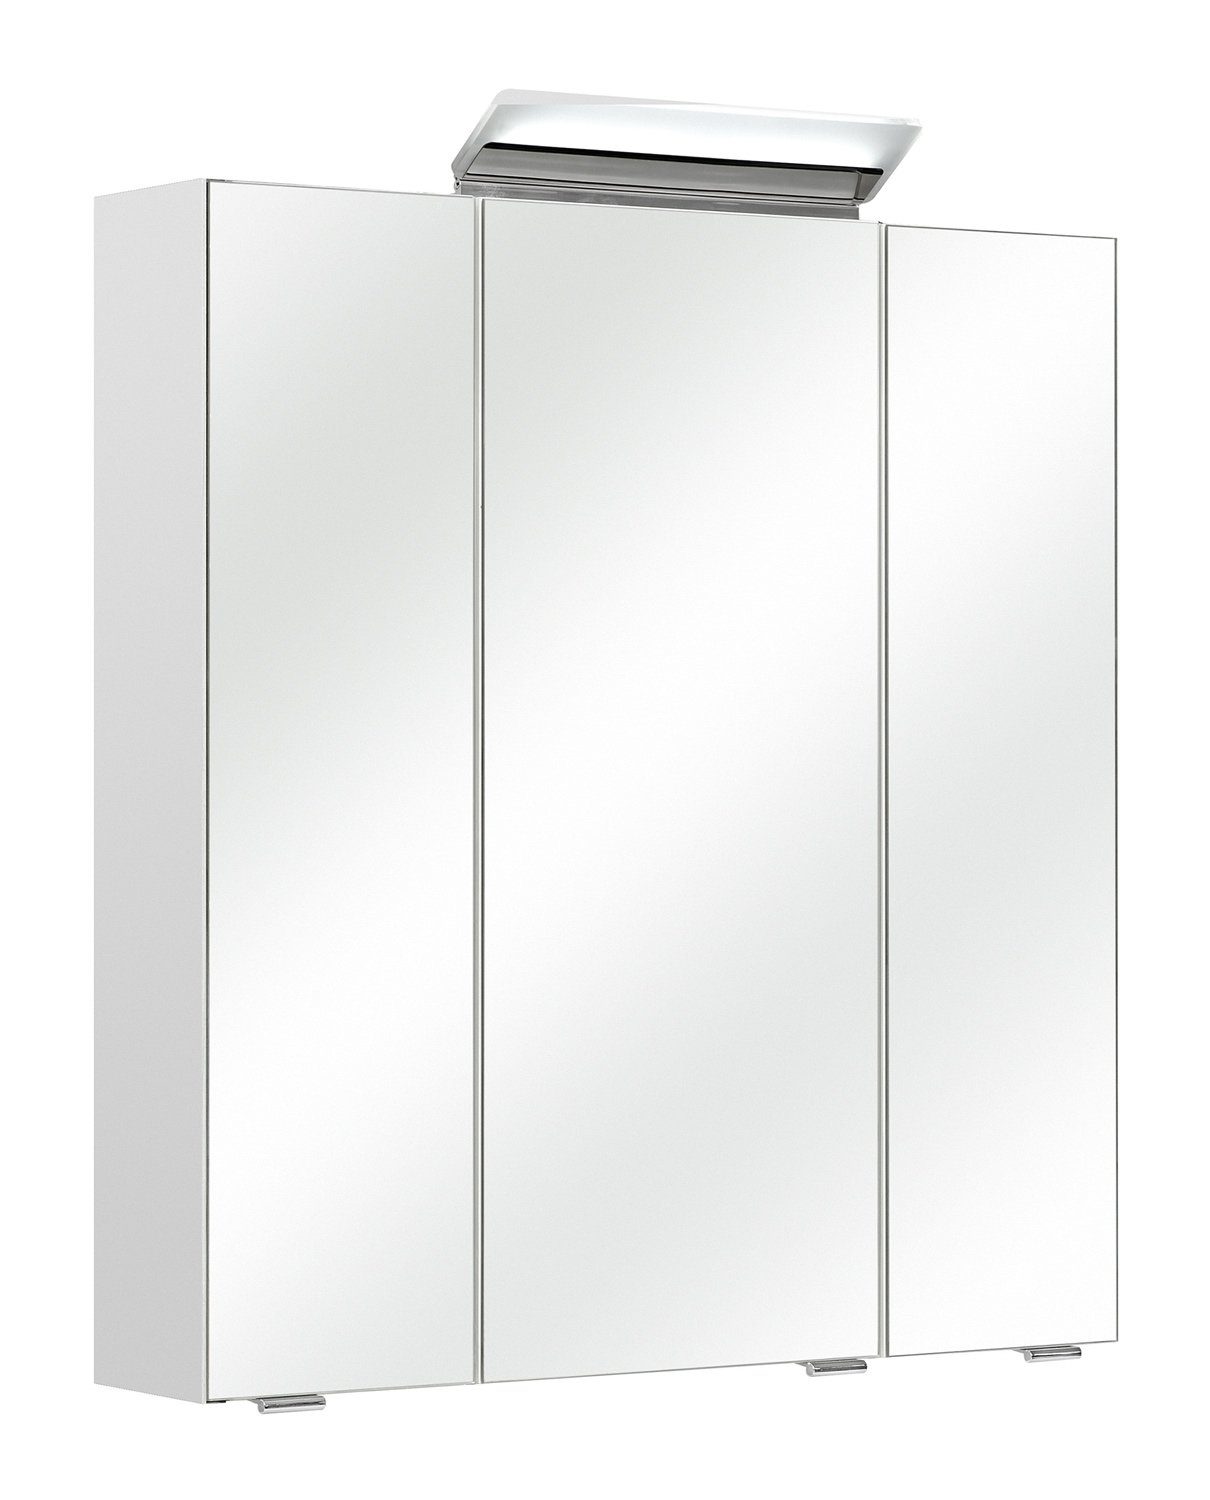 PELIPAL Spiegelschrank ORIA, B 65 x H 70 cm, Weiß Seidenmatt, mit 3 Spiegeltüren, inkl. LED-Beleuchtung | Spiegelschränke